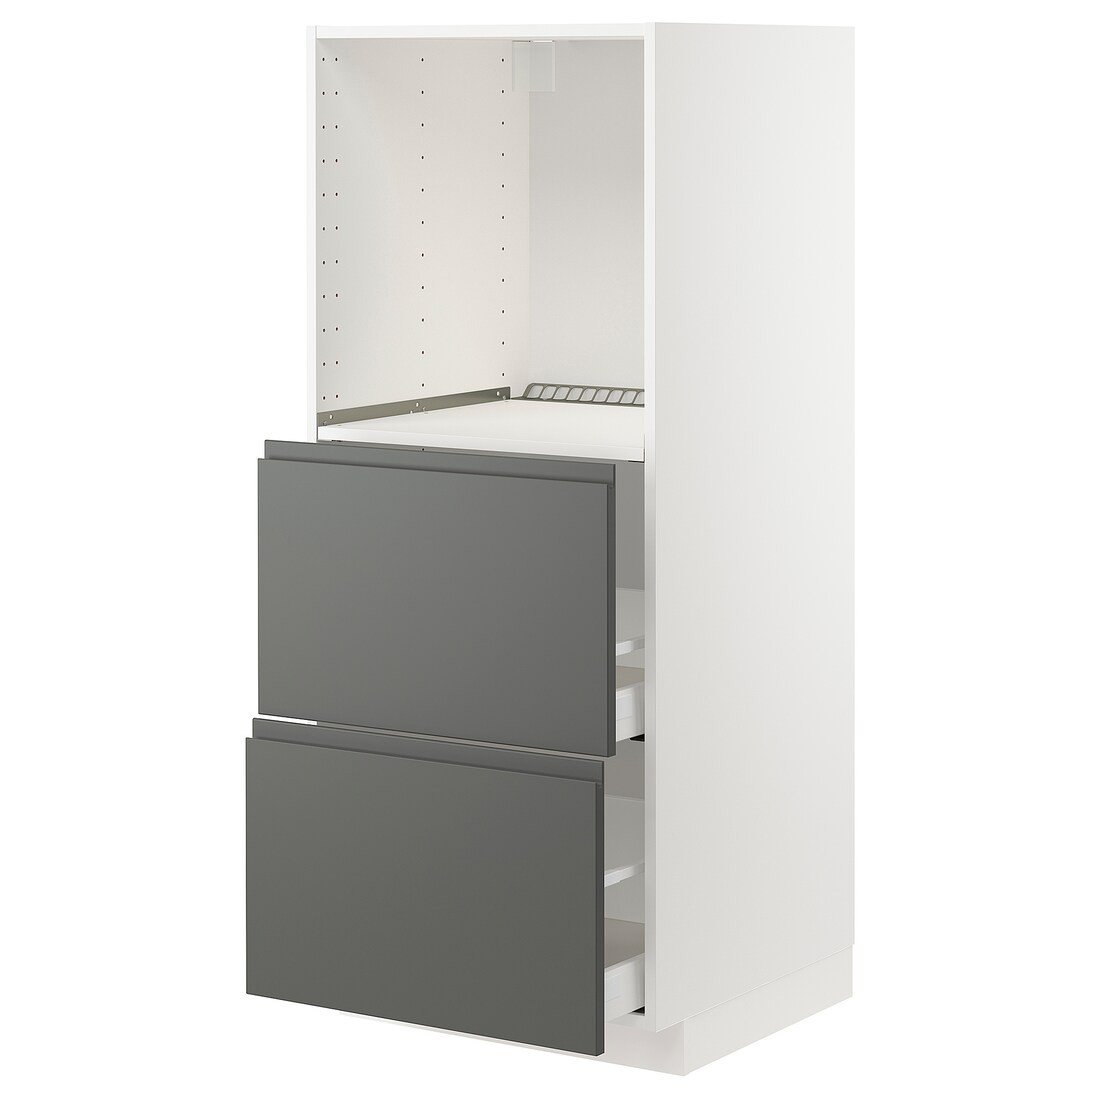 IKEA METOD МЕТОД / MAXIMERA МАКСИМЕРА Высокий шкаф с 2 ящиками для духовки, белый / Voxtorp темно-серый, 60x60x140 см 79310518 793.105.18